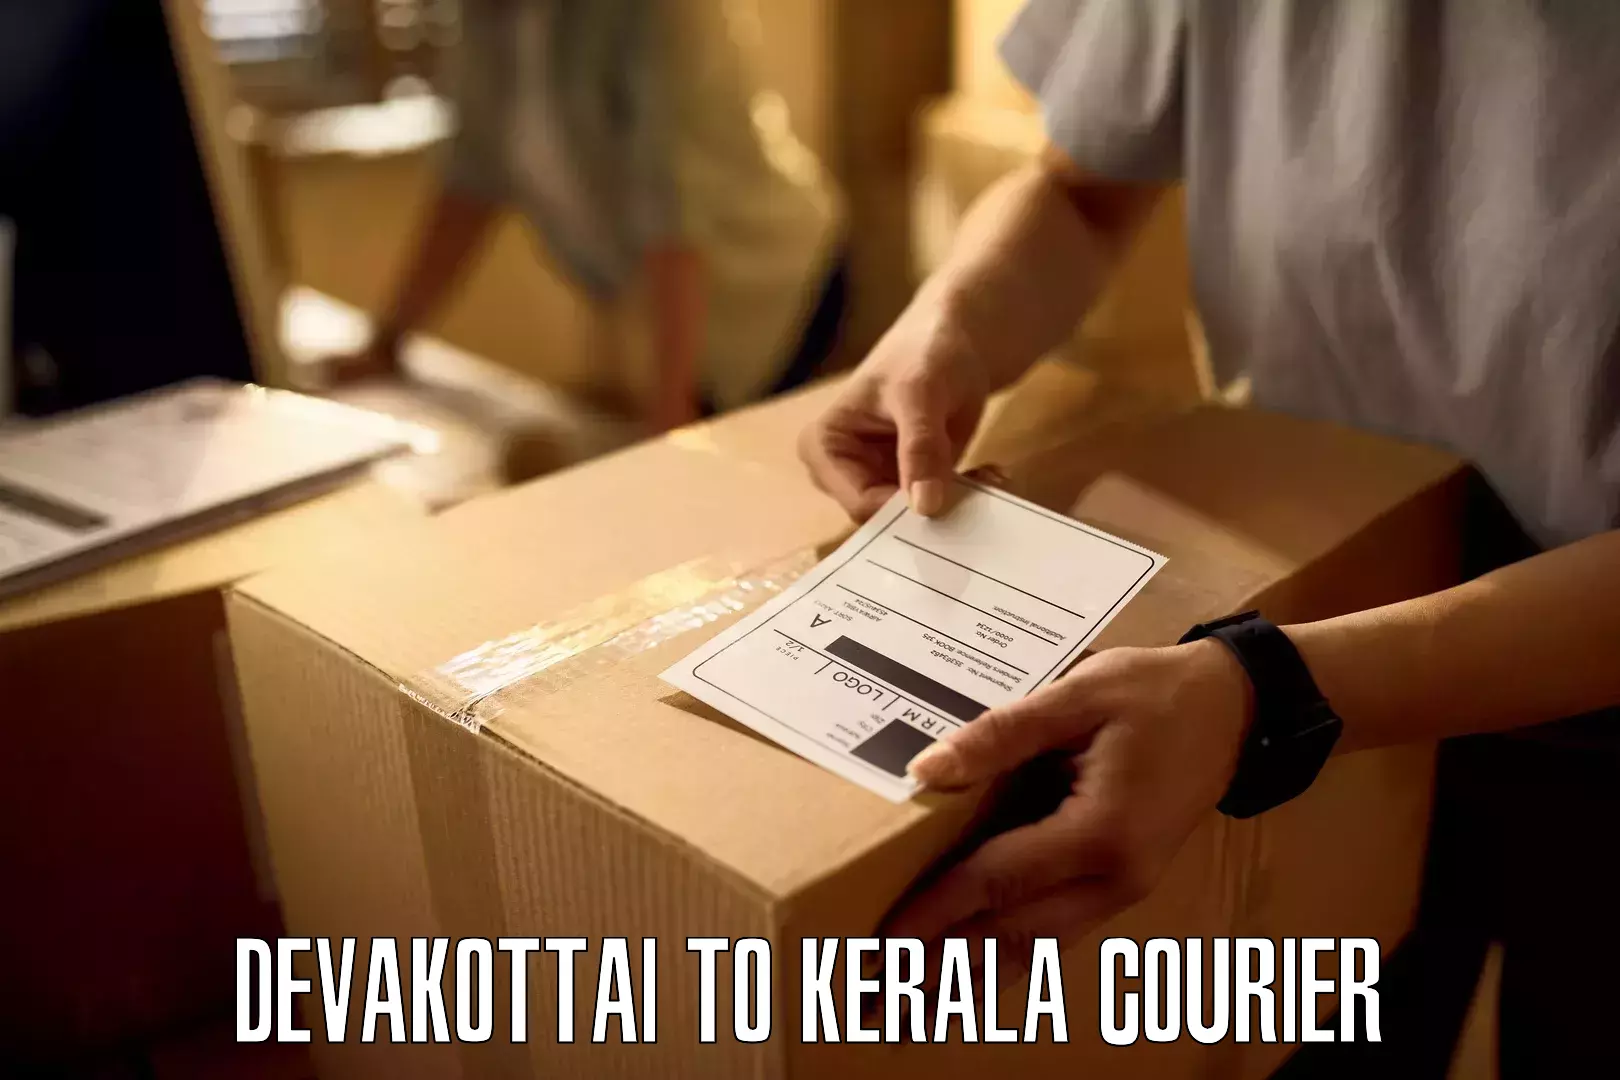 Courier insurance Devakottai to IIIT Kottayam